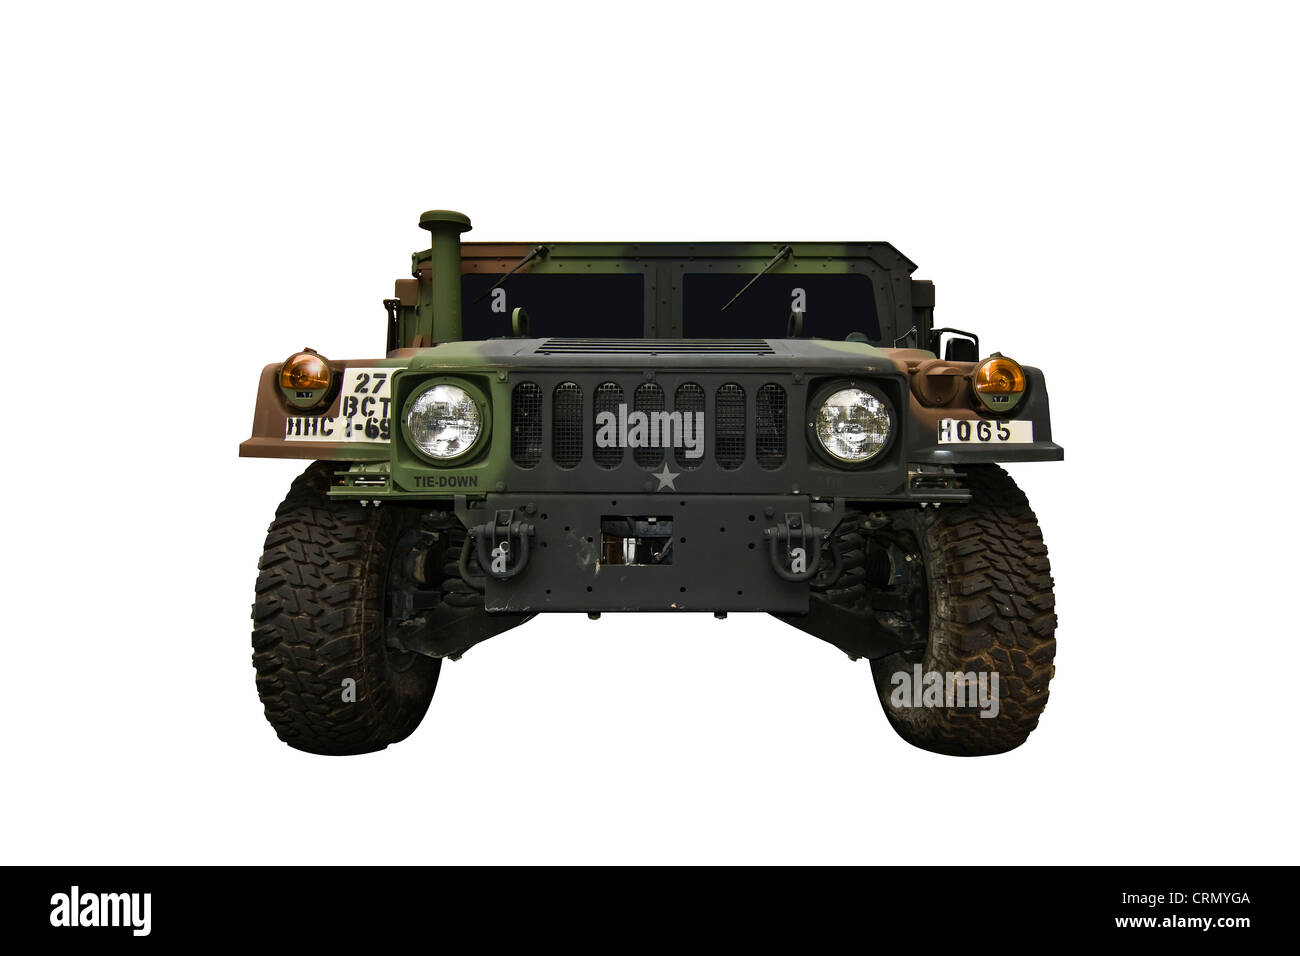 Schneiden Sie aus. High Mobility Multipurpose Wheeled Vehicle (HMMWV oder Humvee). Ein US-Militär 4WD Fahrzeug erstellt von AM General. Stockfoto